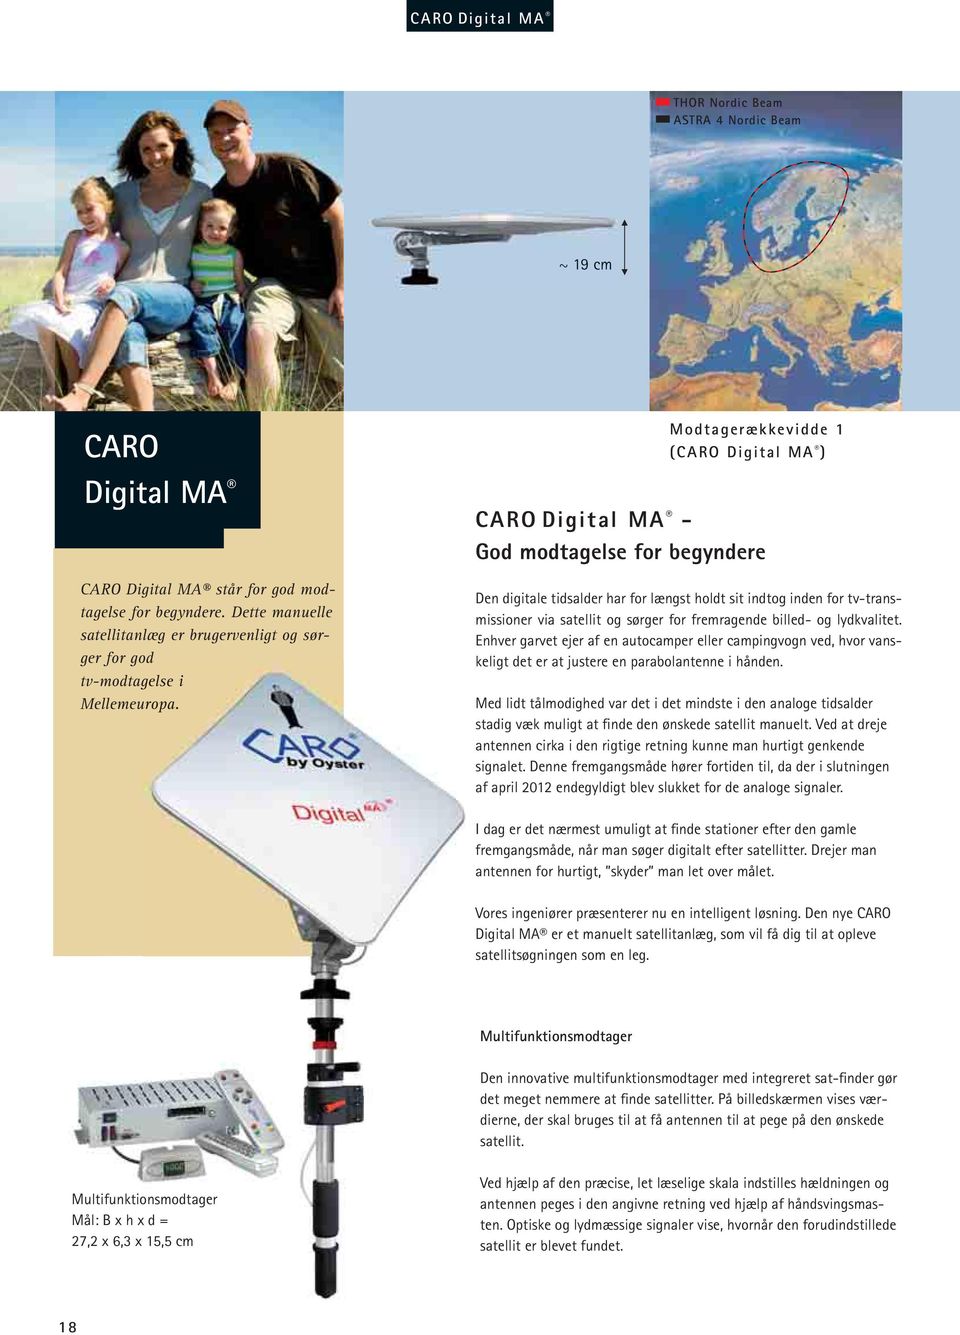 Modtagerækkevidde 1 (CARO Digital MA ) CARO Digital MA - God modtagelse for begyndere Den digitale tidsalder har for længst holdt sit indtog inden for tv-transmissioner via satellit og sørger for